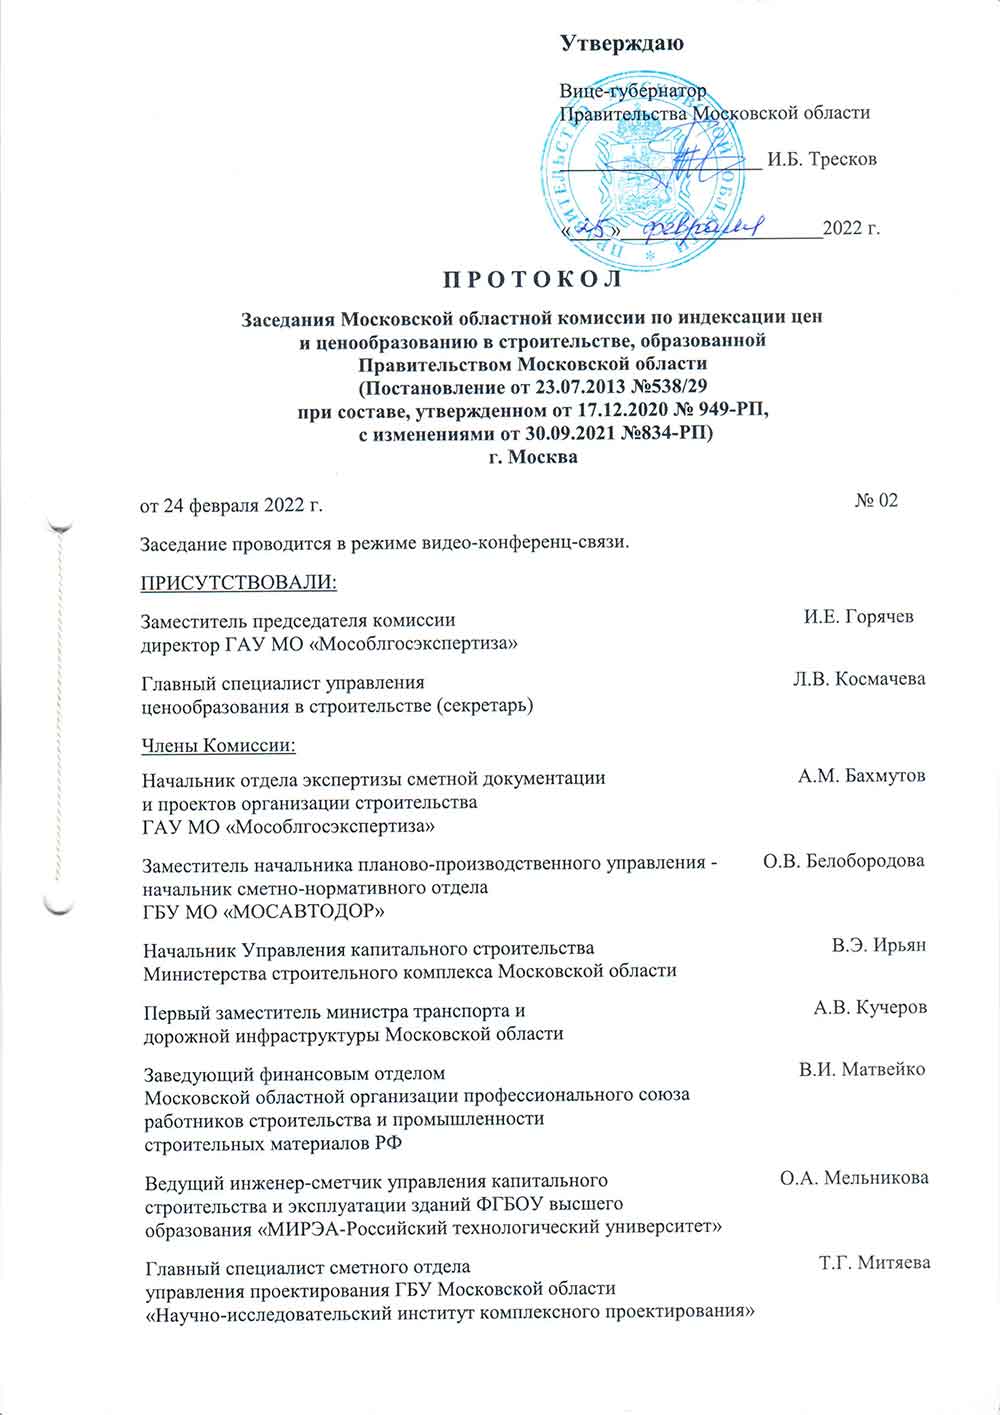 Протокол Мособлгосэкспертизы №2 от 24.02.2022 года